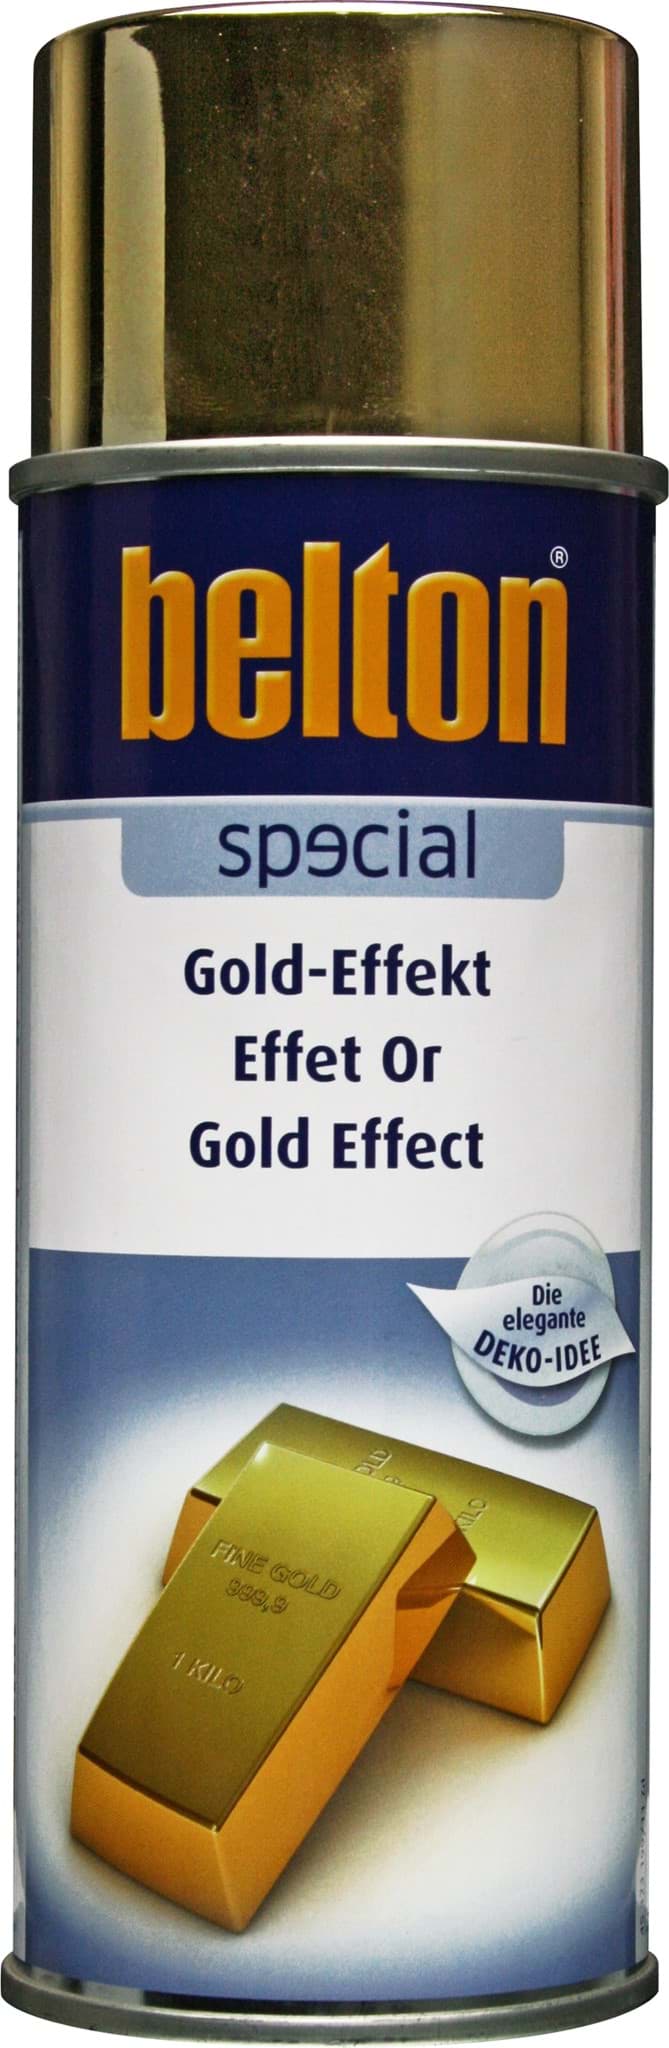 Изображение Belton special Gold Effekt Spray